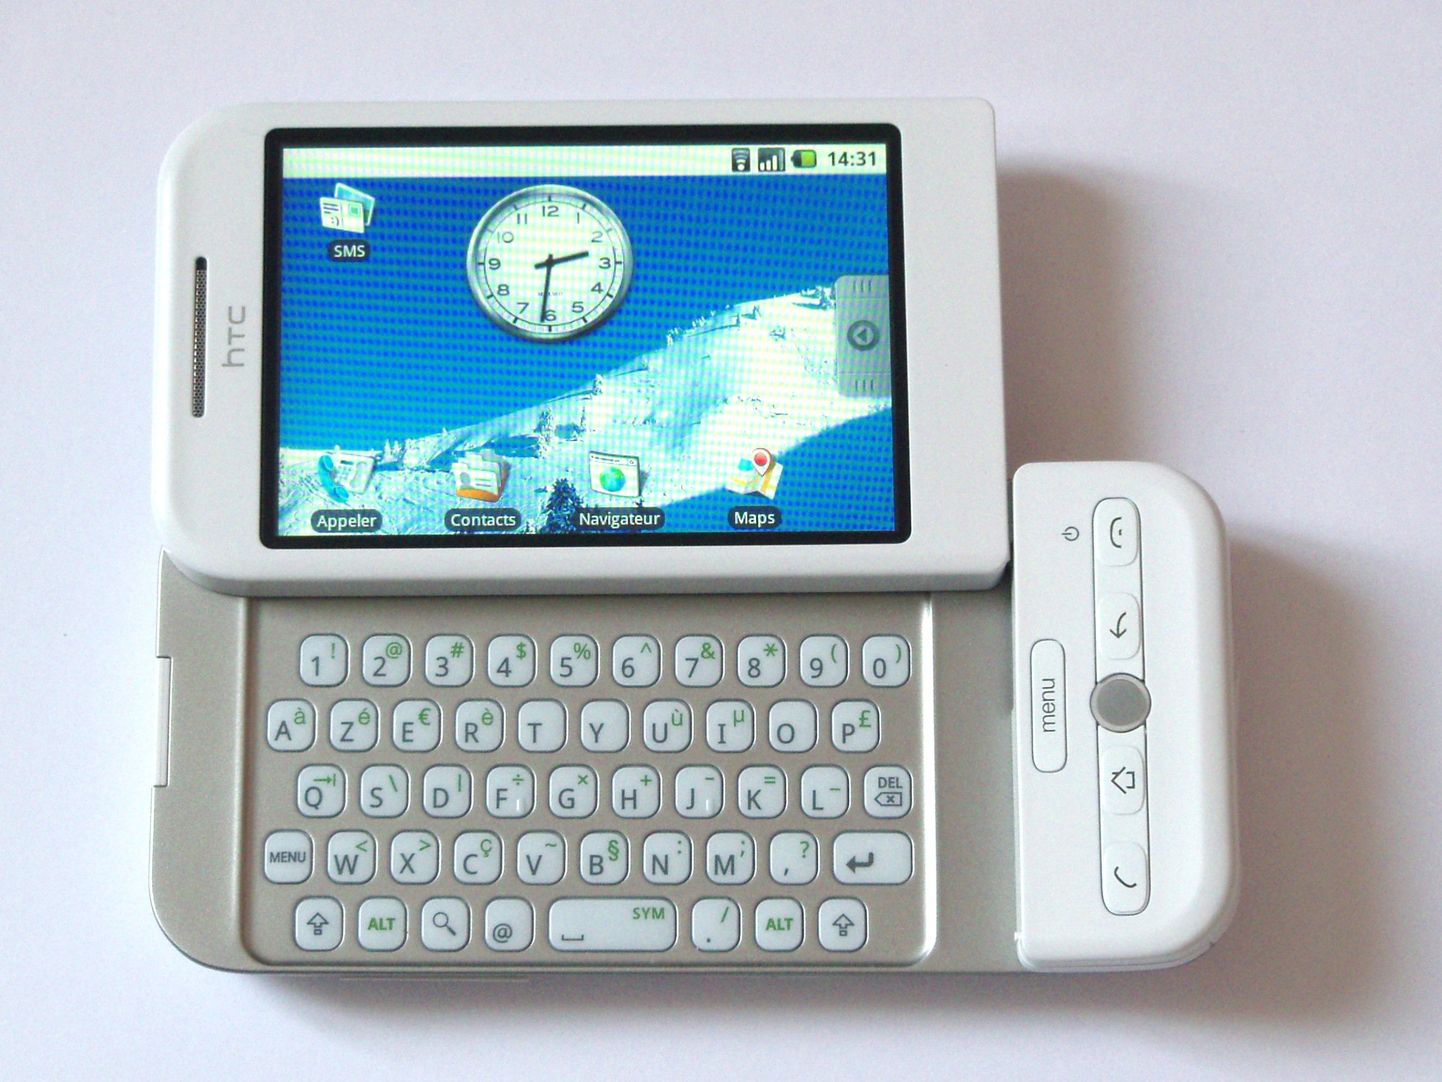 Esimene turule jõudnud Androidiga nutitelefon HTC Dream